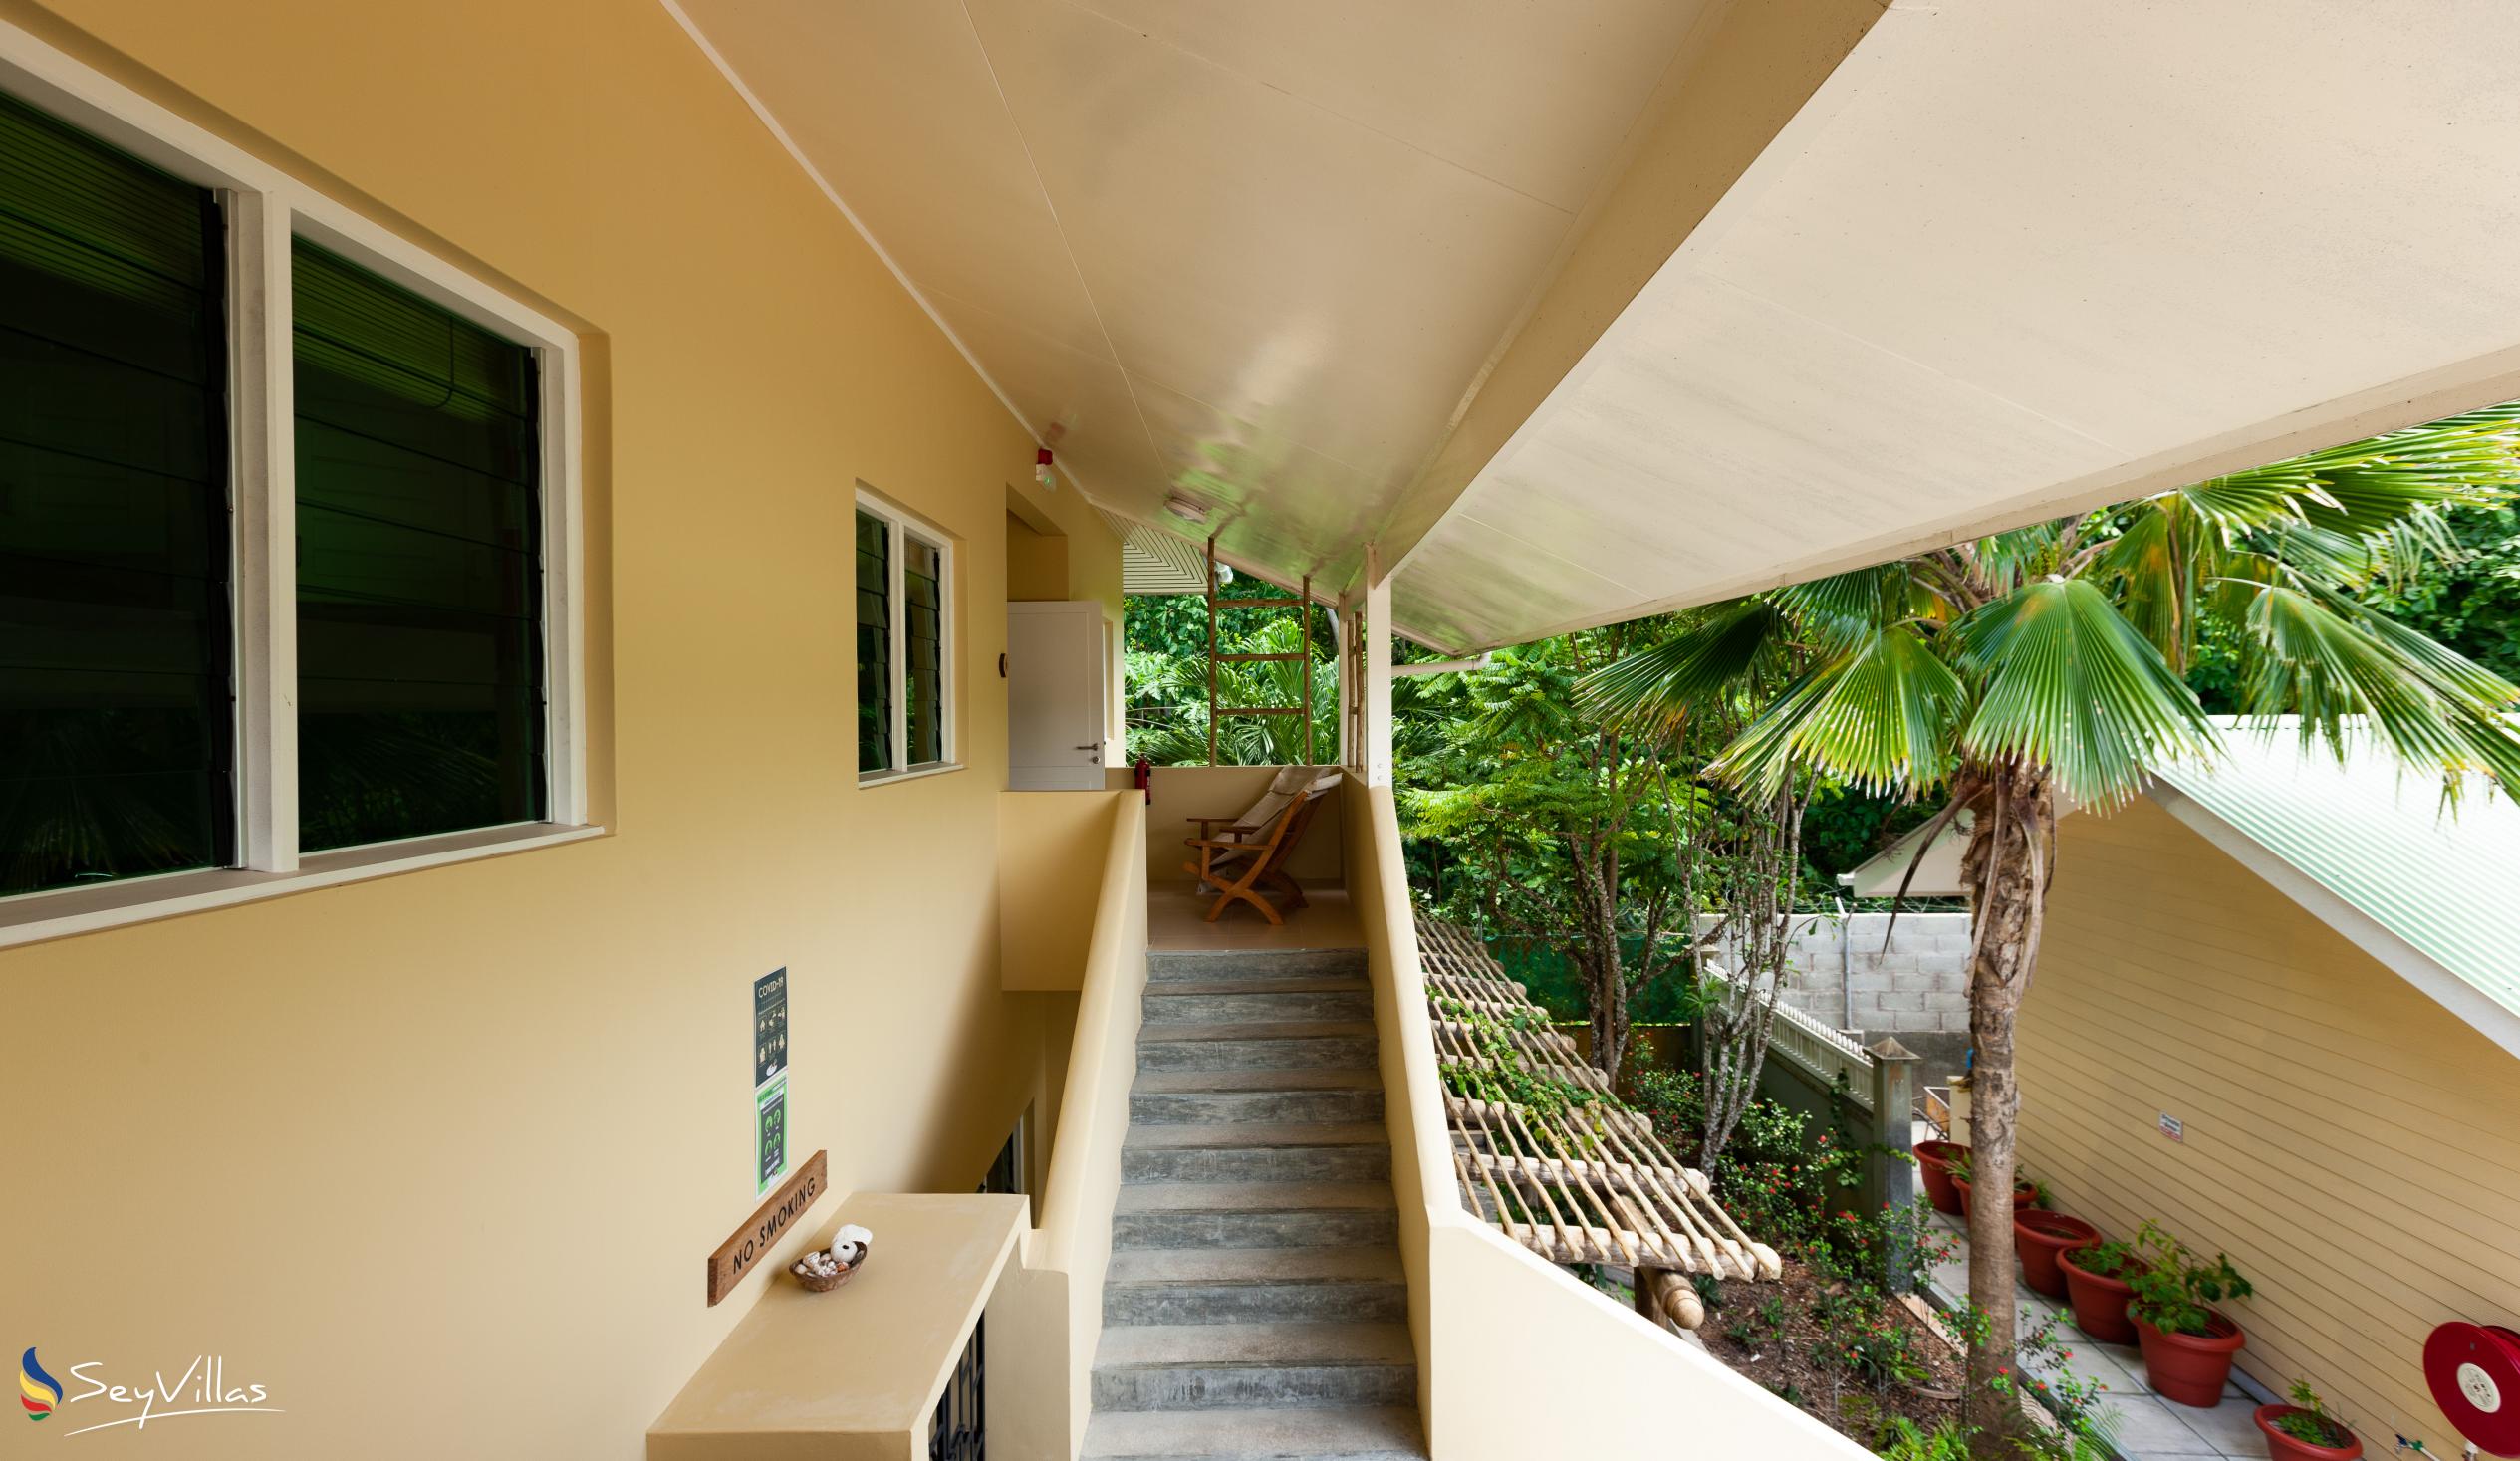 Foto 59: Residence Praslinoise - Ferienstudio (Obergeschoss) - Praslin (Seychellen)